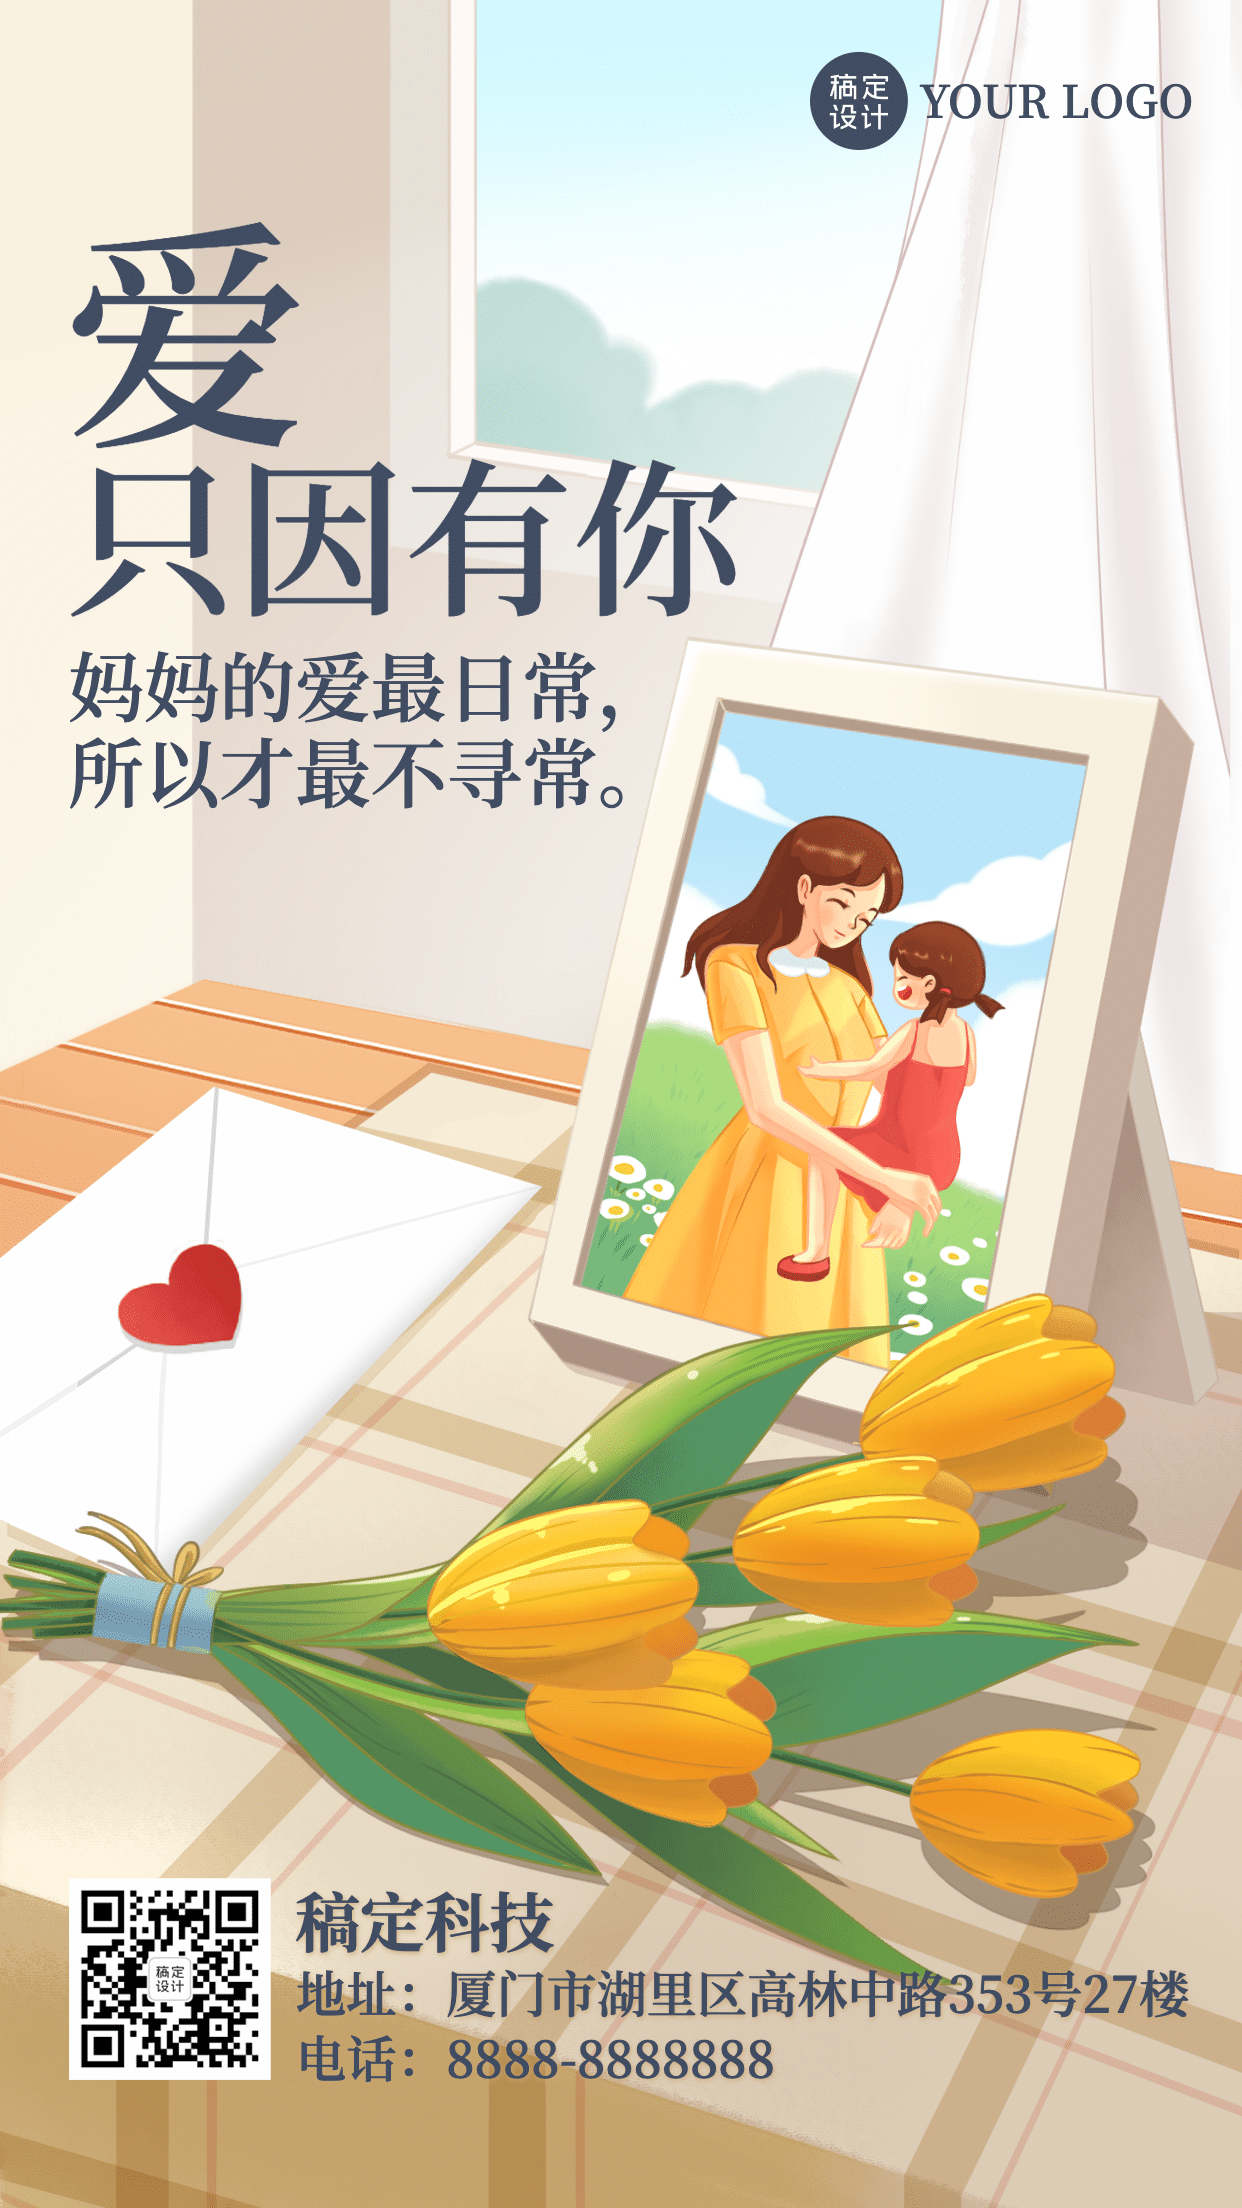 感恩母亲节献花的男孩矢量插画图片-千库网